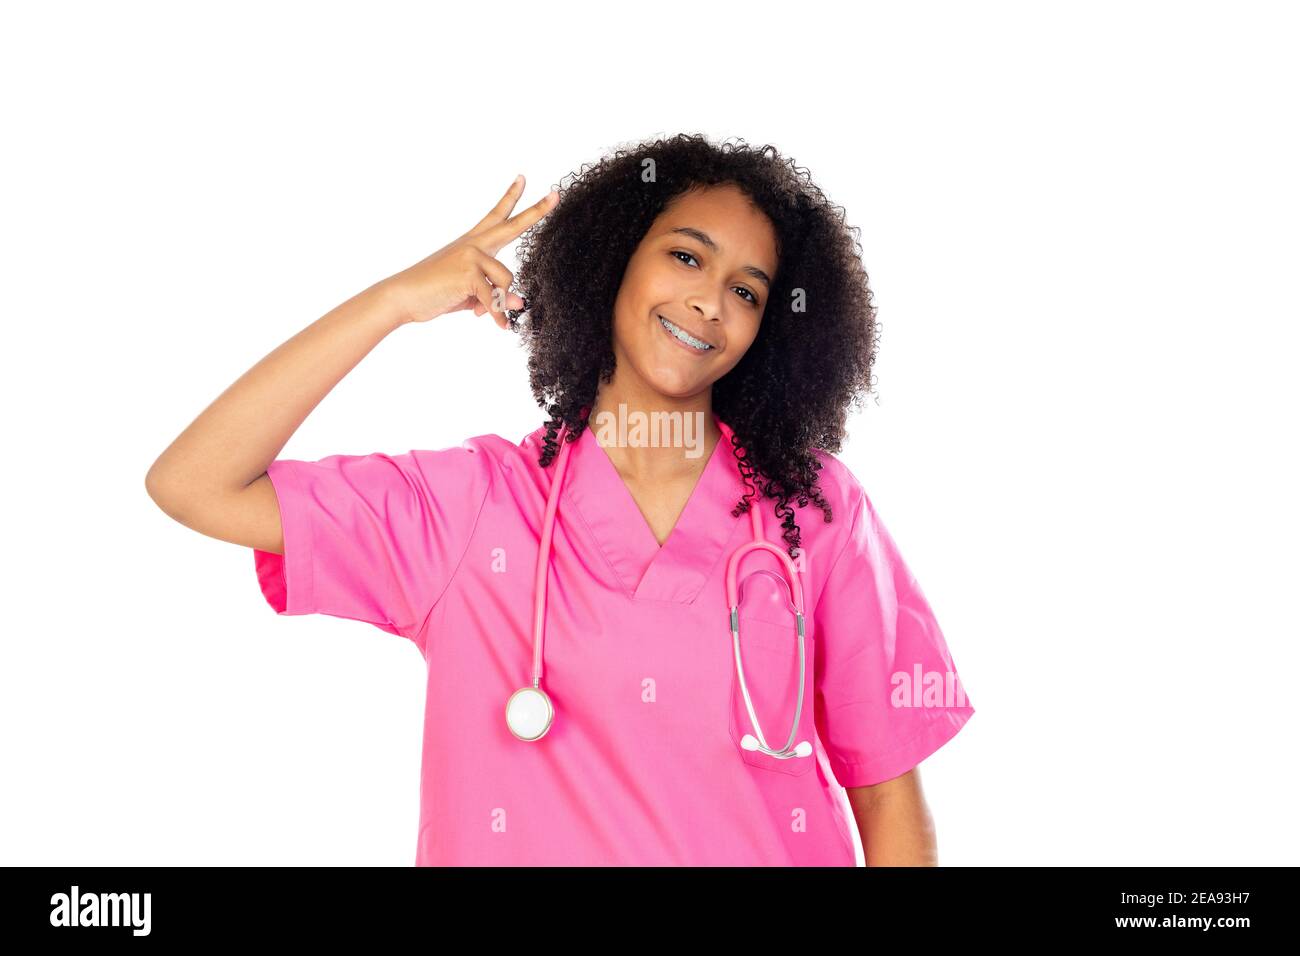 Liebenswert kleinen Arzt mit rosa Uniform isoliert auf einem weißen Hintergrund Stockfoto